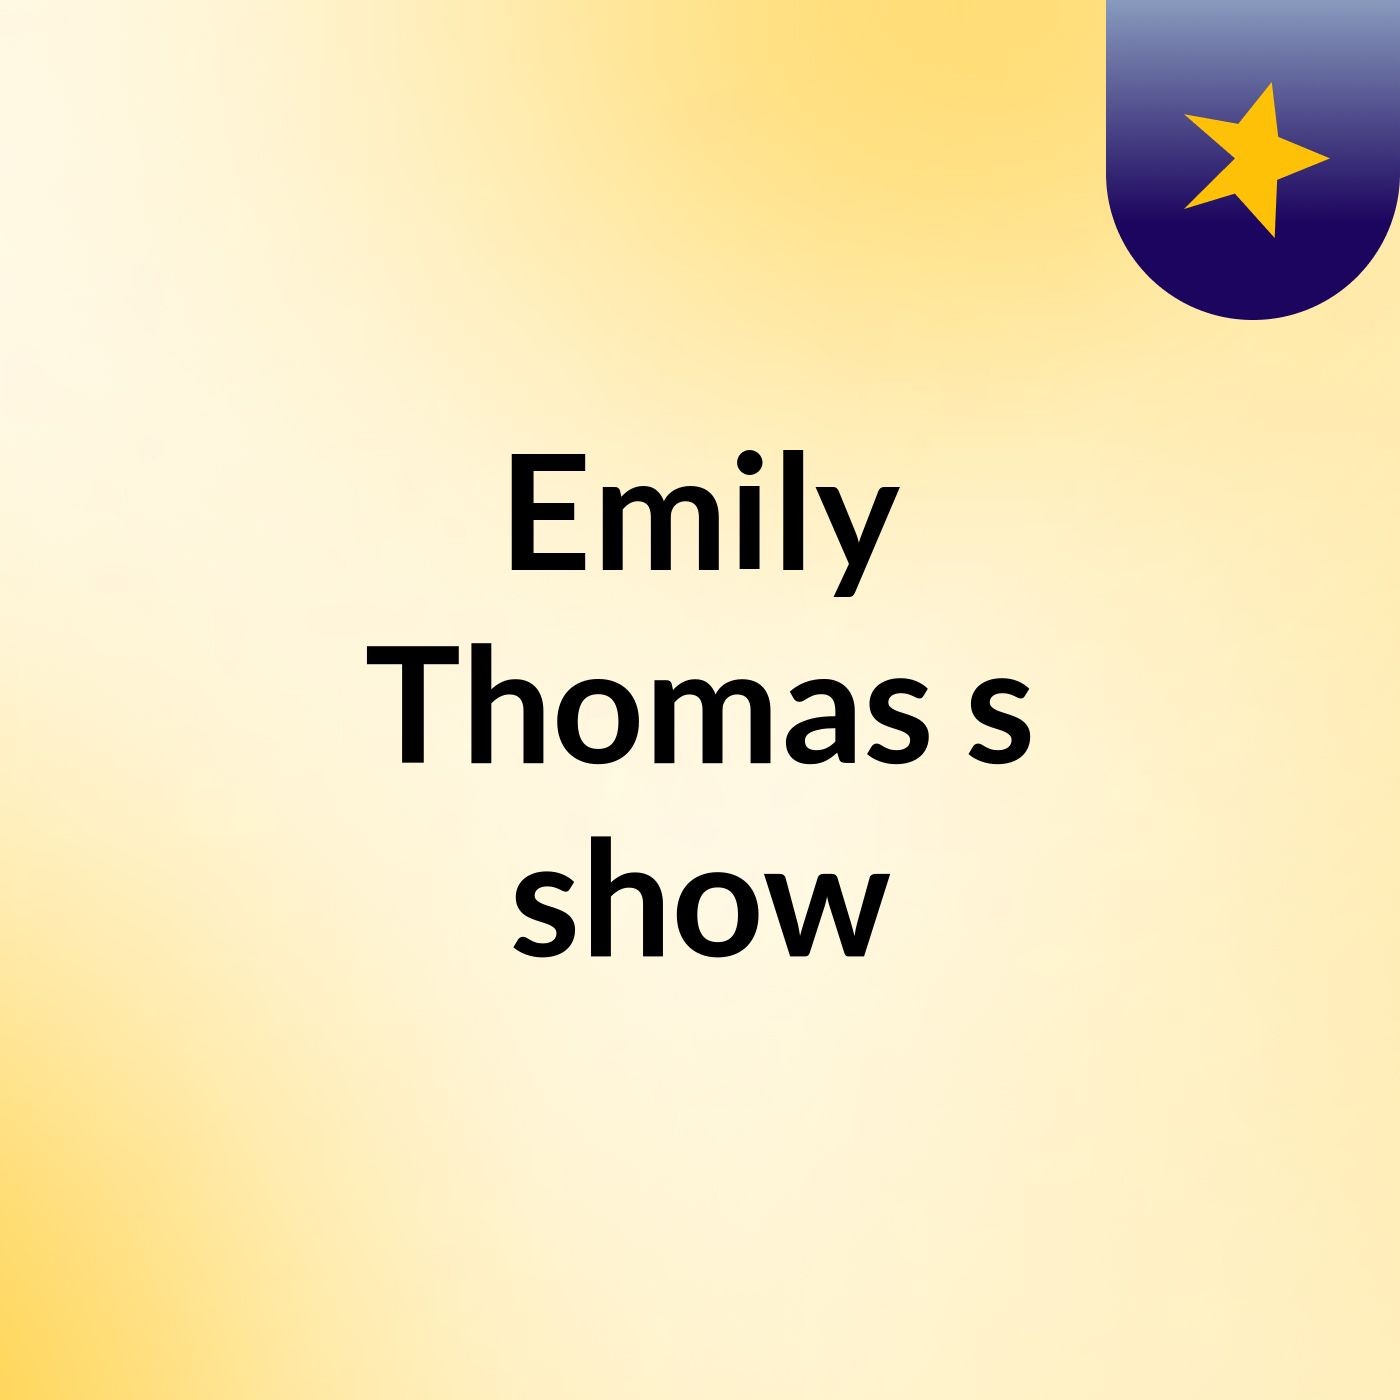 Emily Thomas's show